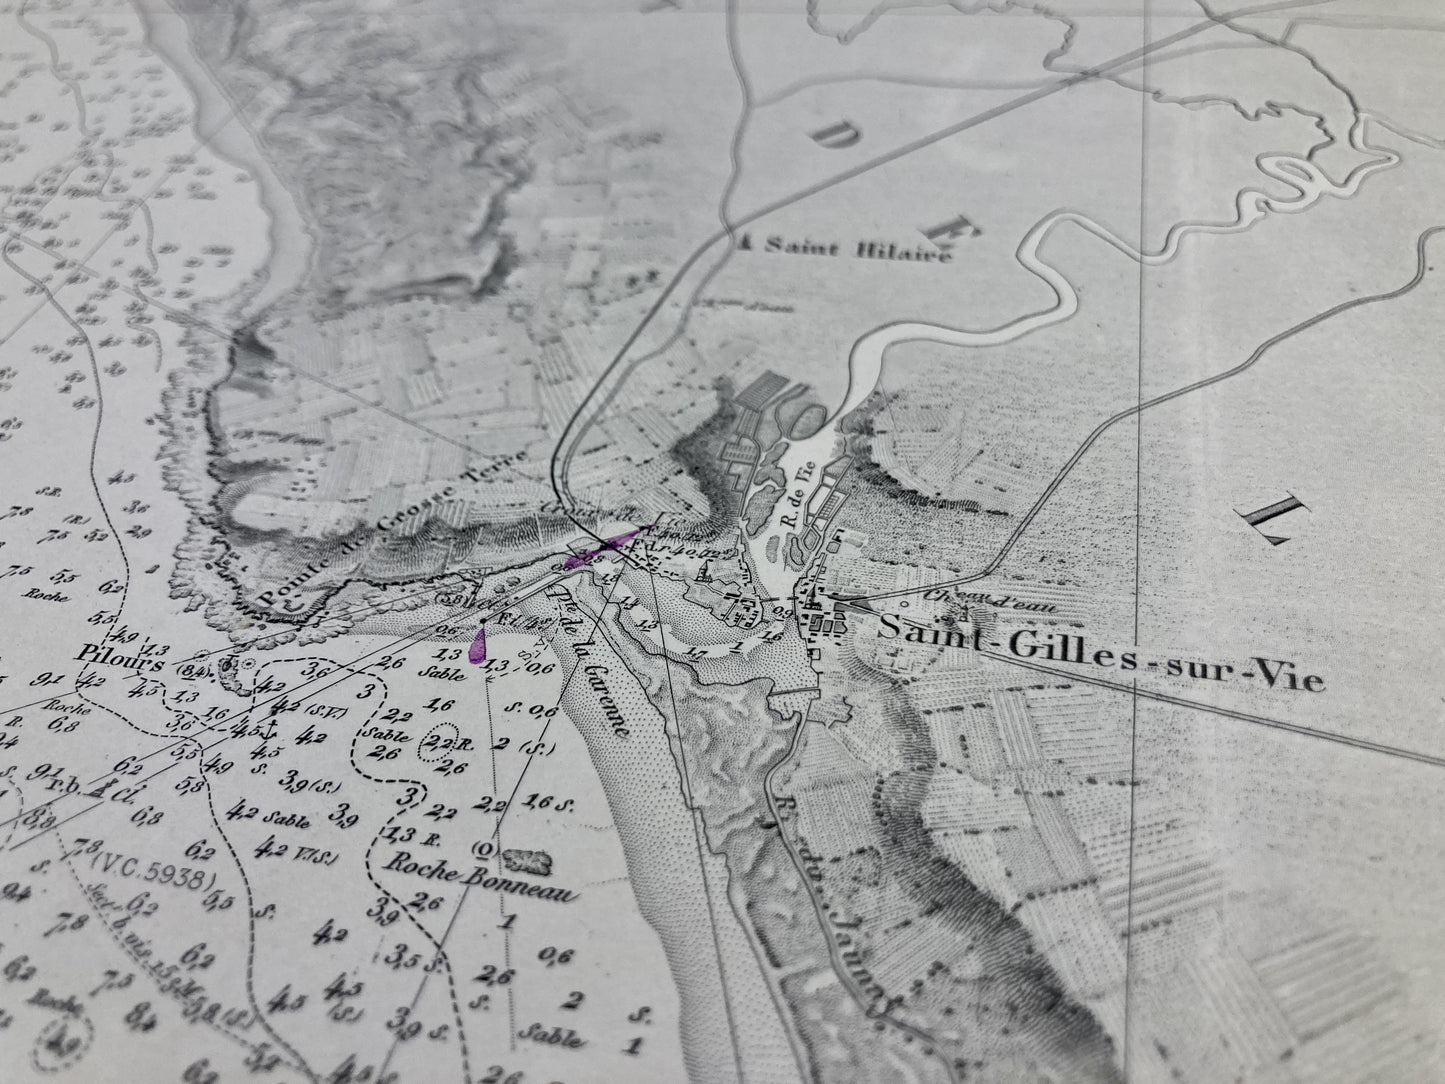 Détail de la carte marine ancienne de Saint-Gilles-Croix-de-Vie